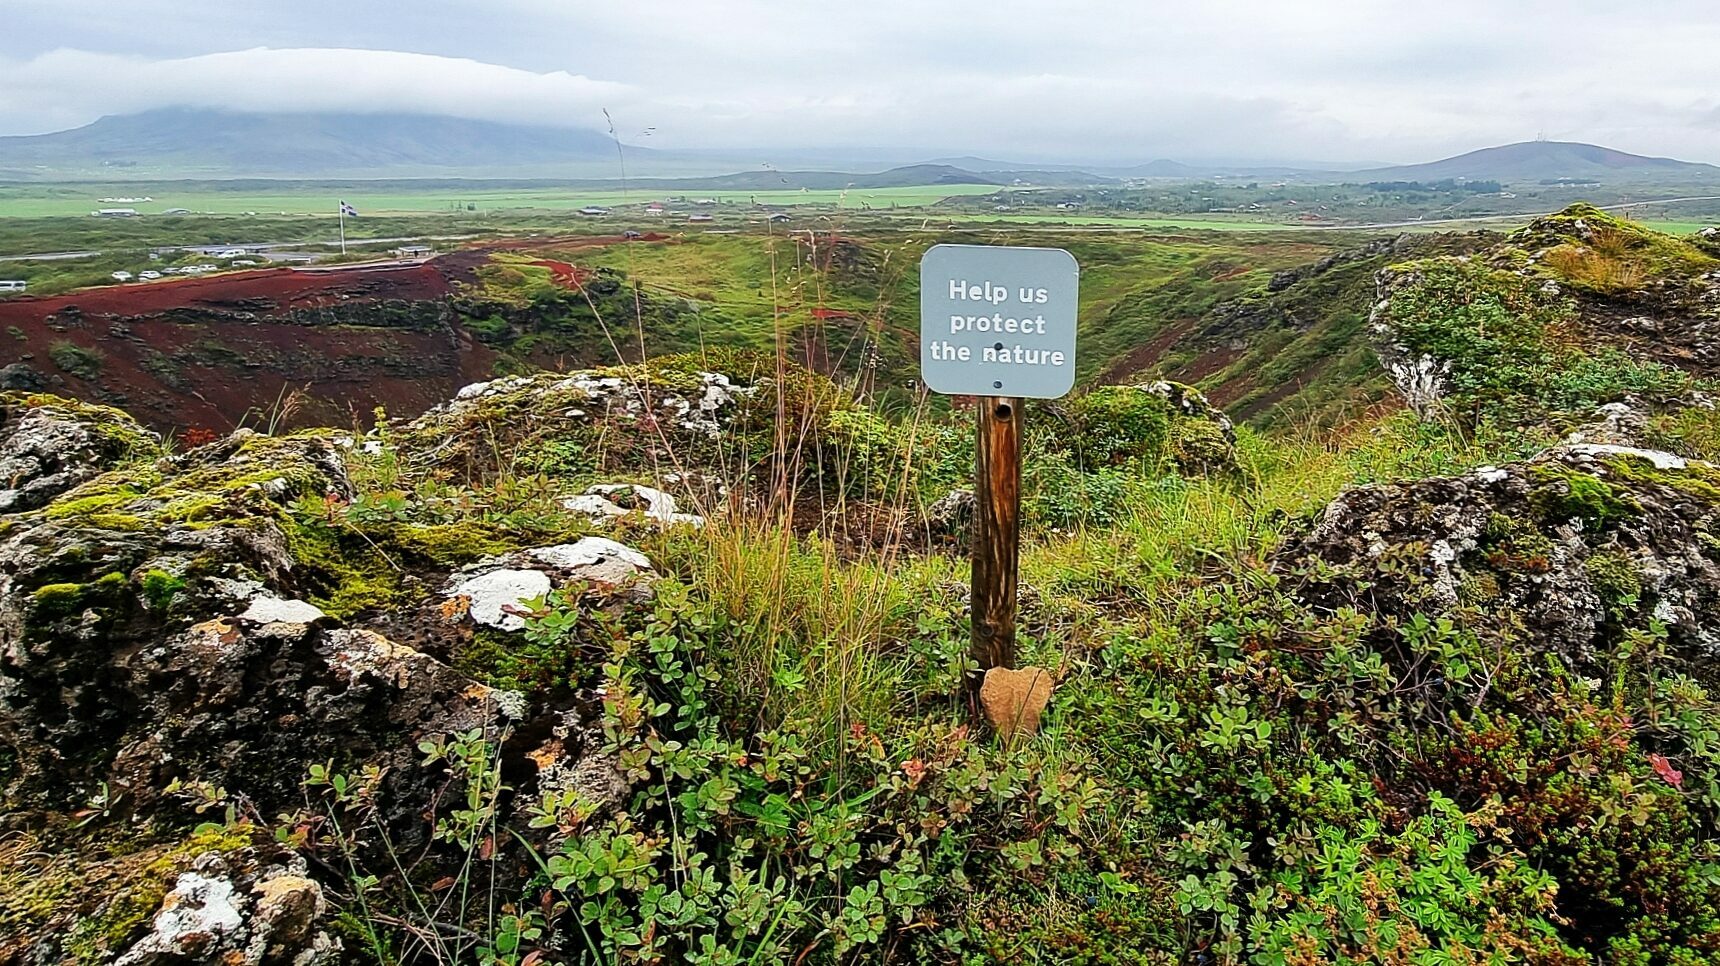 Island Nachhaltigkeit - Schild: help us protect the nature steht auf einem hügeligen Wandergebiet mit kleinen Sträuchern und Moosen. Im Hintergrund Straßen und Islandflagge erkennbar. Bewölkter Himmel.